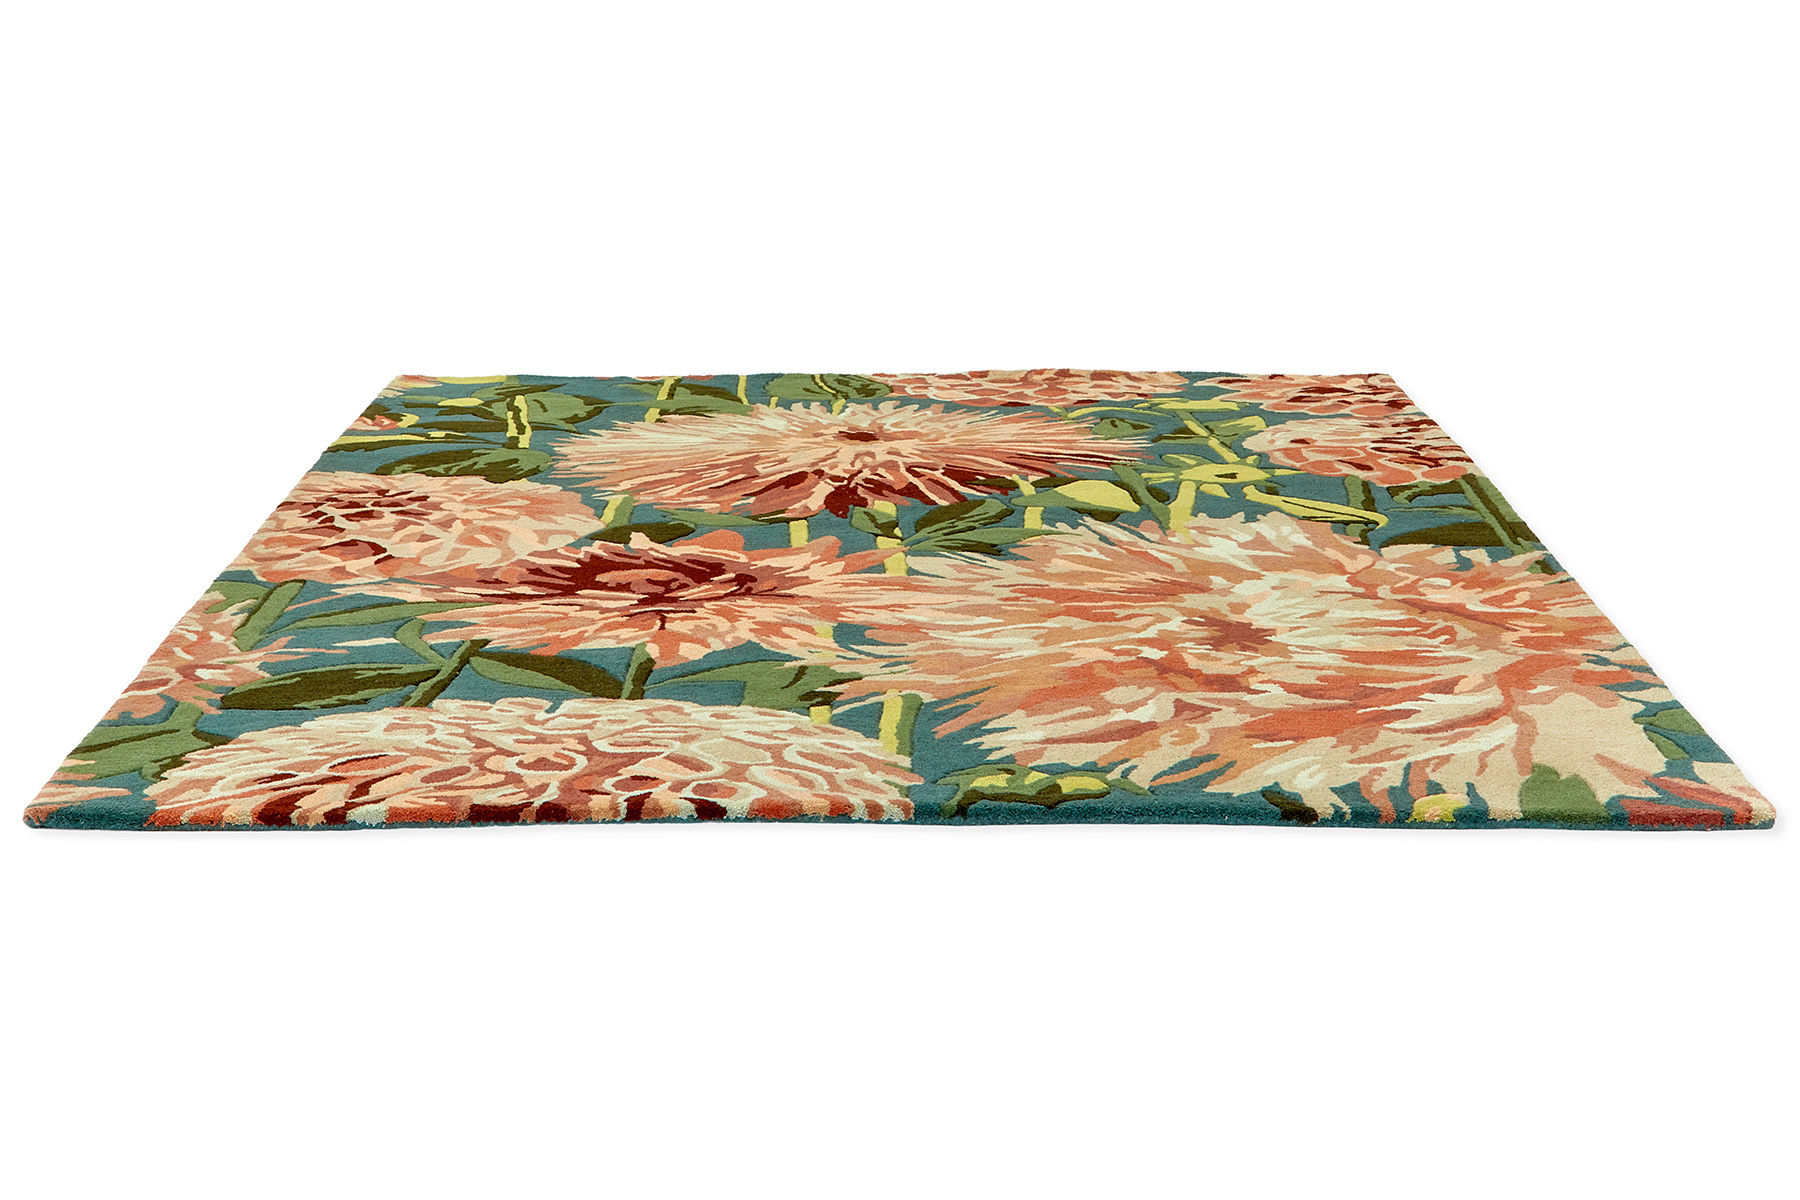 Dahlia Coral / Wilderness Designer Rug ☞ Size: 6' 7" x 9' 2" (200 x 280 cm)